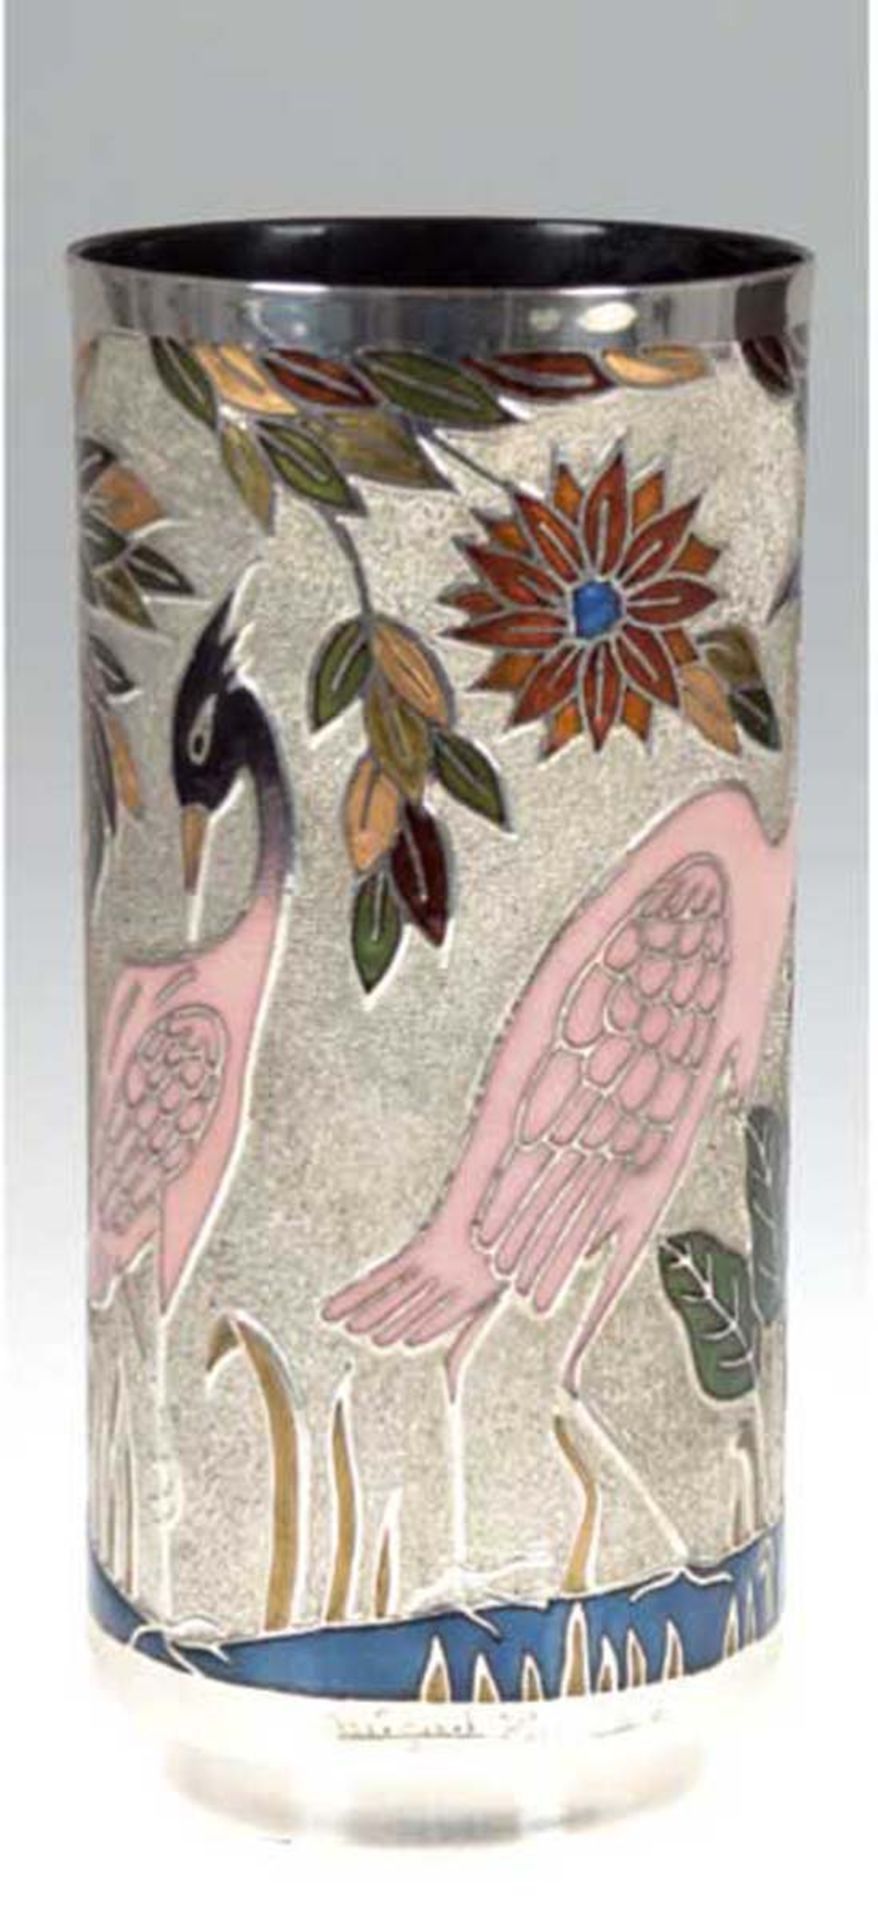 Vase, signiert "Miguel Pineda", Zylinderform, silberfarbenes Metall, polychrom emailliert,umlaufende